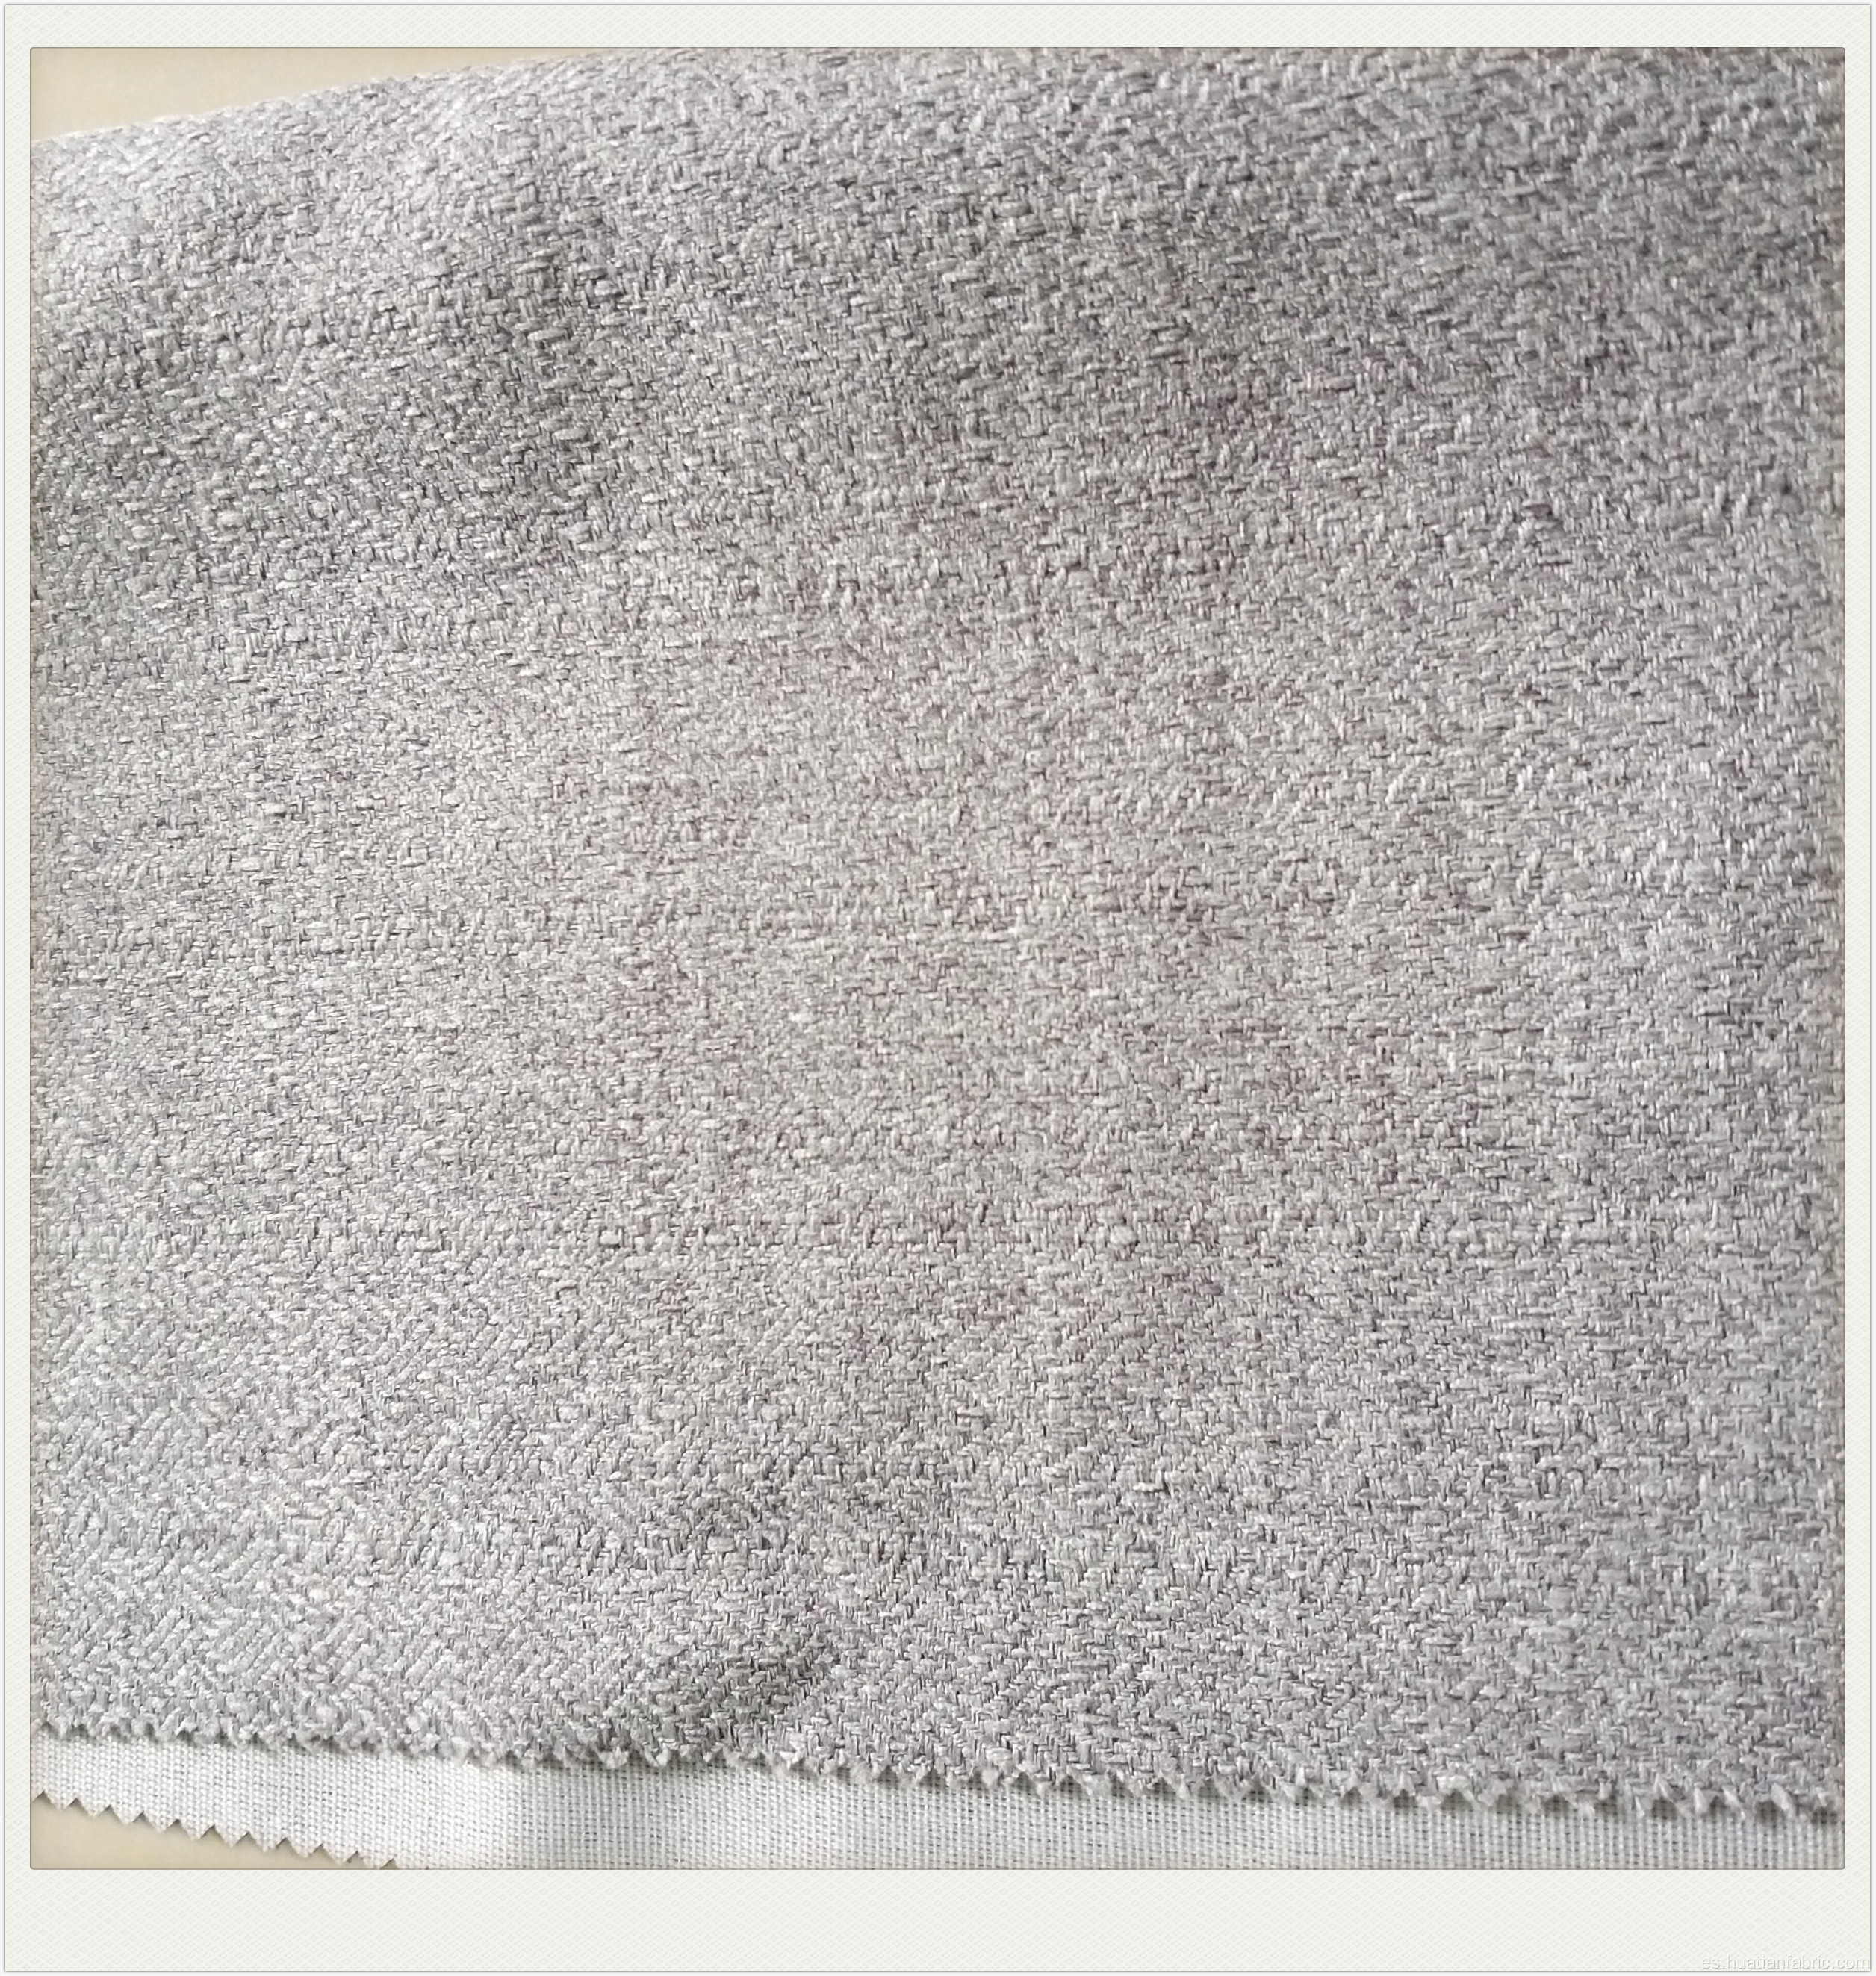 Tela de sofá Daphne para uso doméstico de tapicería de textiles